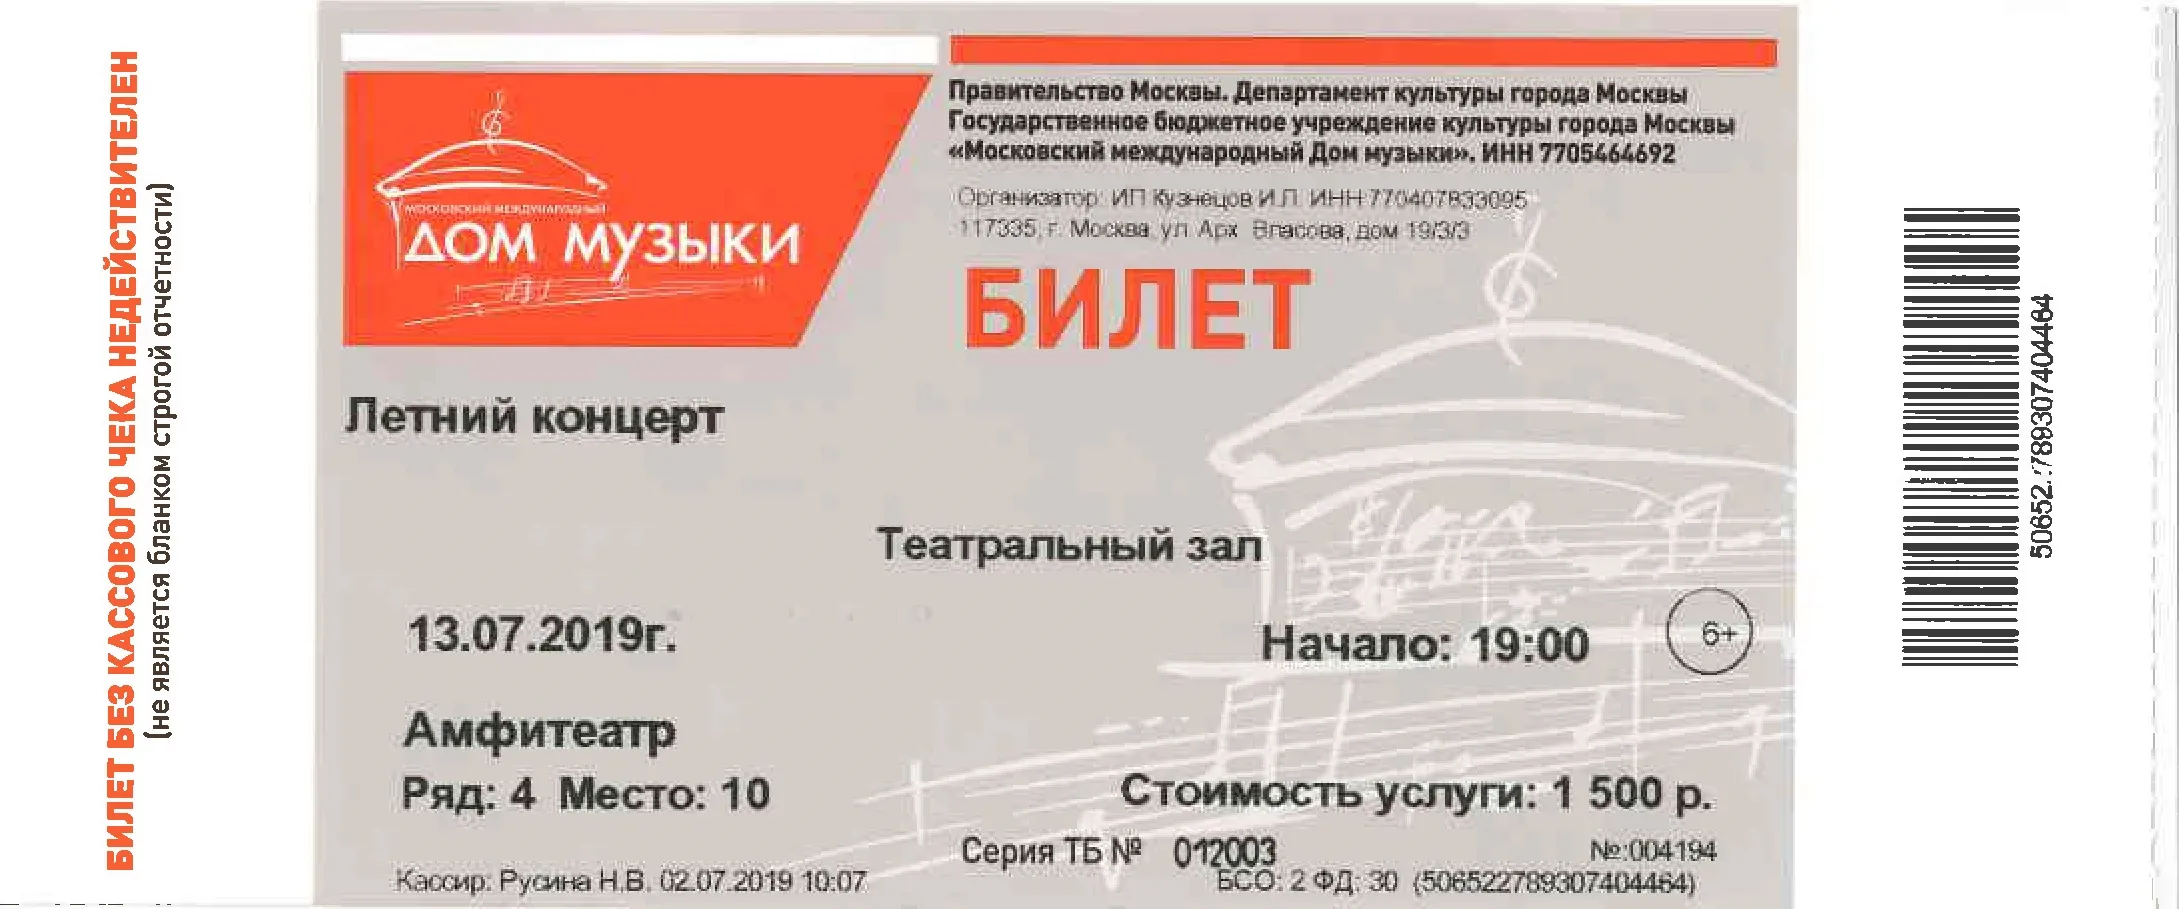 Билеты на московские концерты. Билет на концерт. Билет на музыкальный концерт. Дом музыки билеты. Билет на мероприятие.